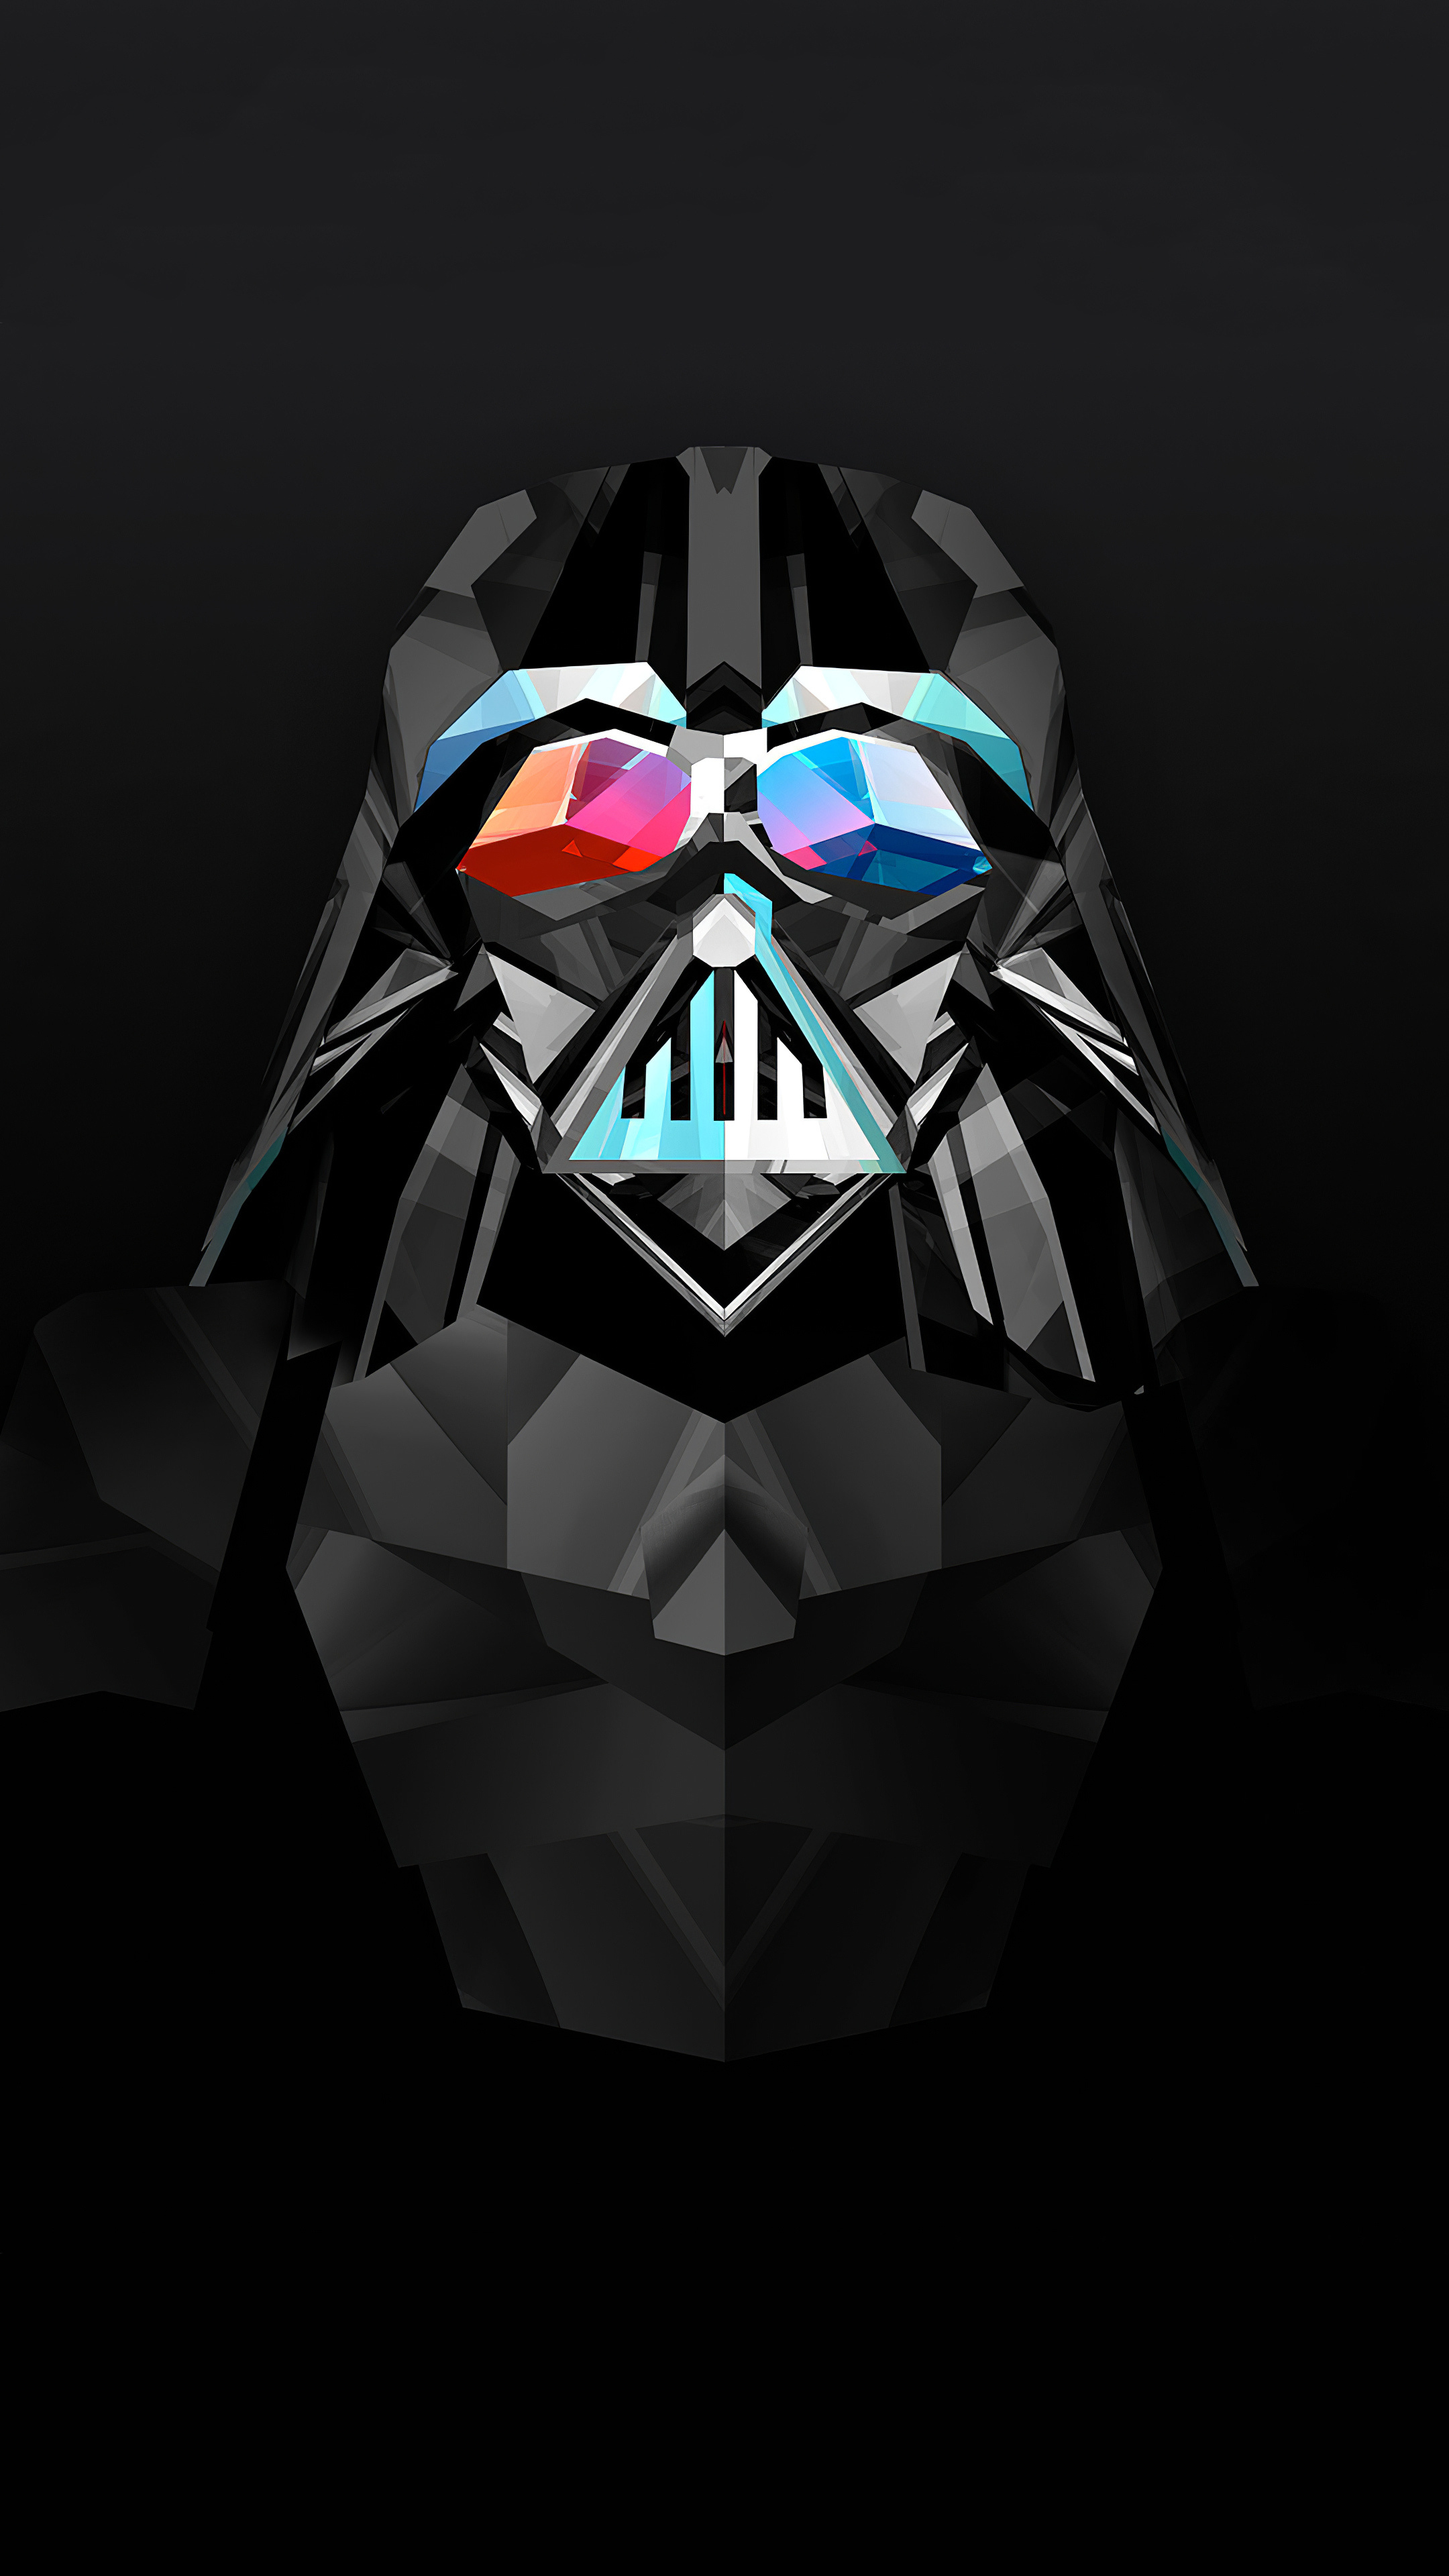 Justin Maller, Darth Vader, Star Wars art, 2160x3840 4K Handy